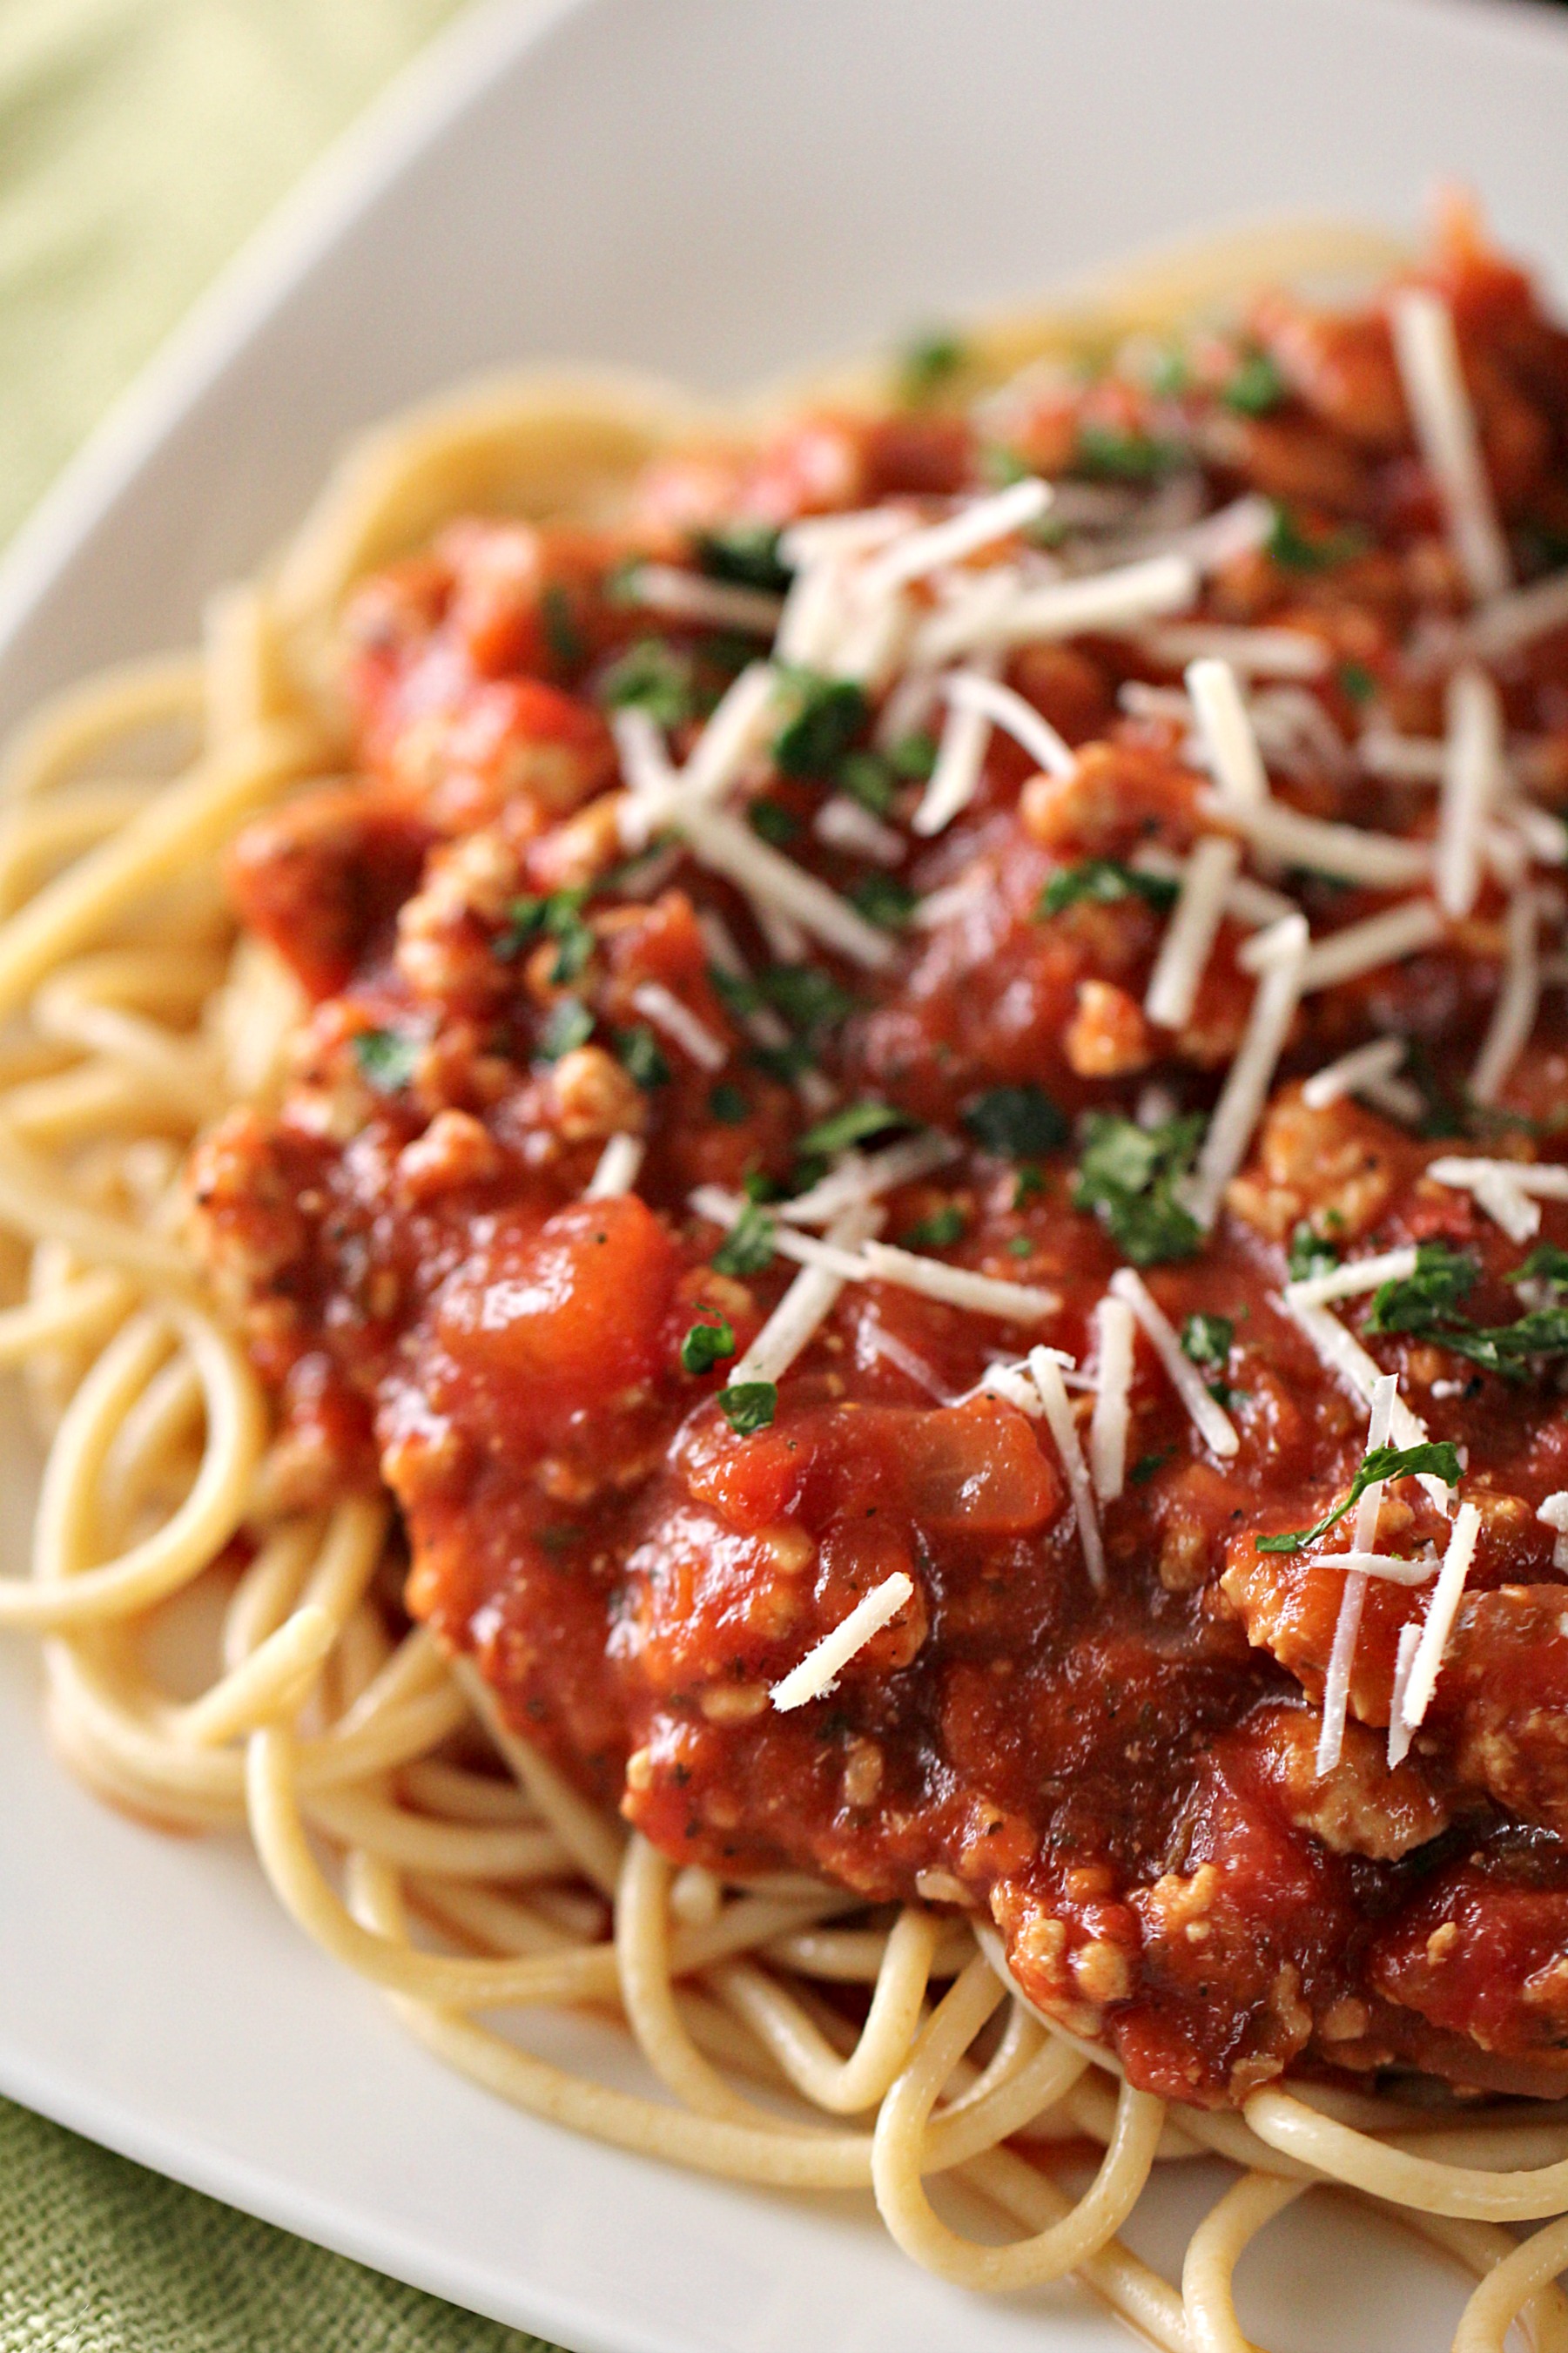 Спагетти. Паста с фаршем. Спагетти с мясным соусом. Спагетти с фаршем в томатном соусе. Фарш с томатной пастой для макарон